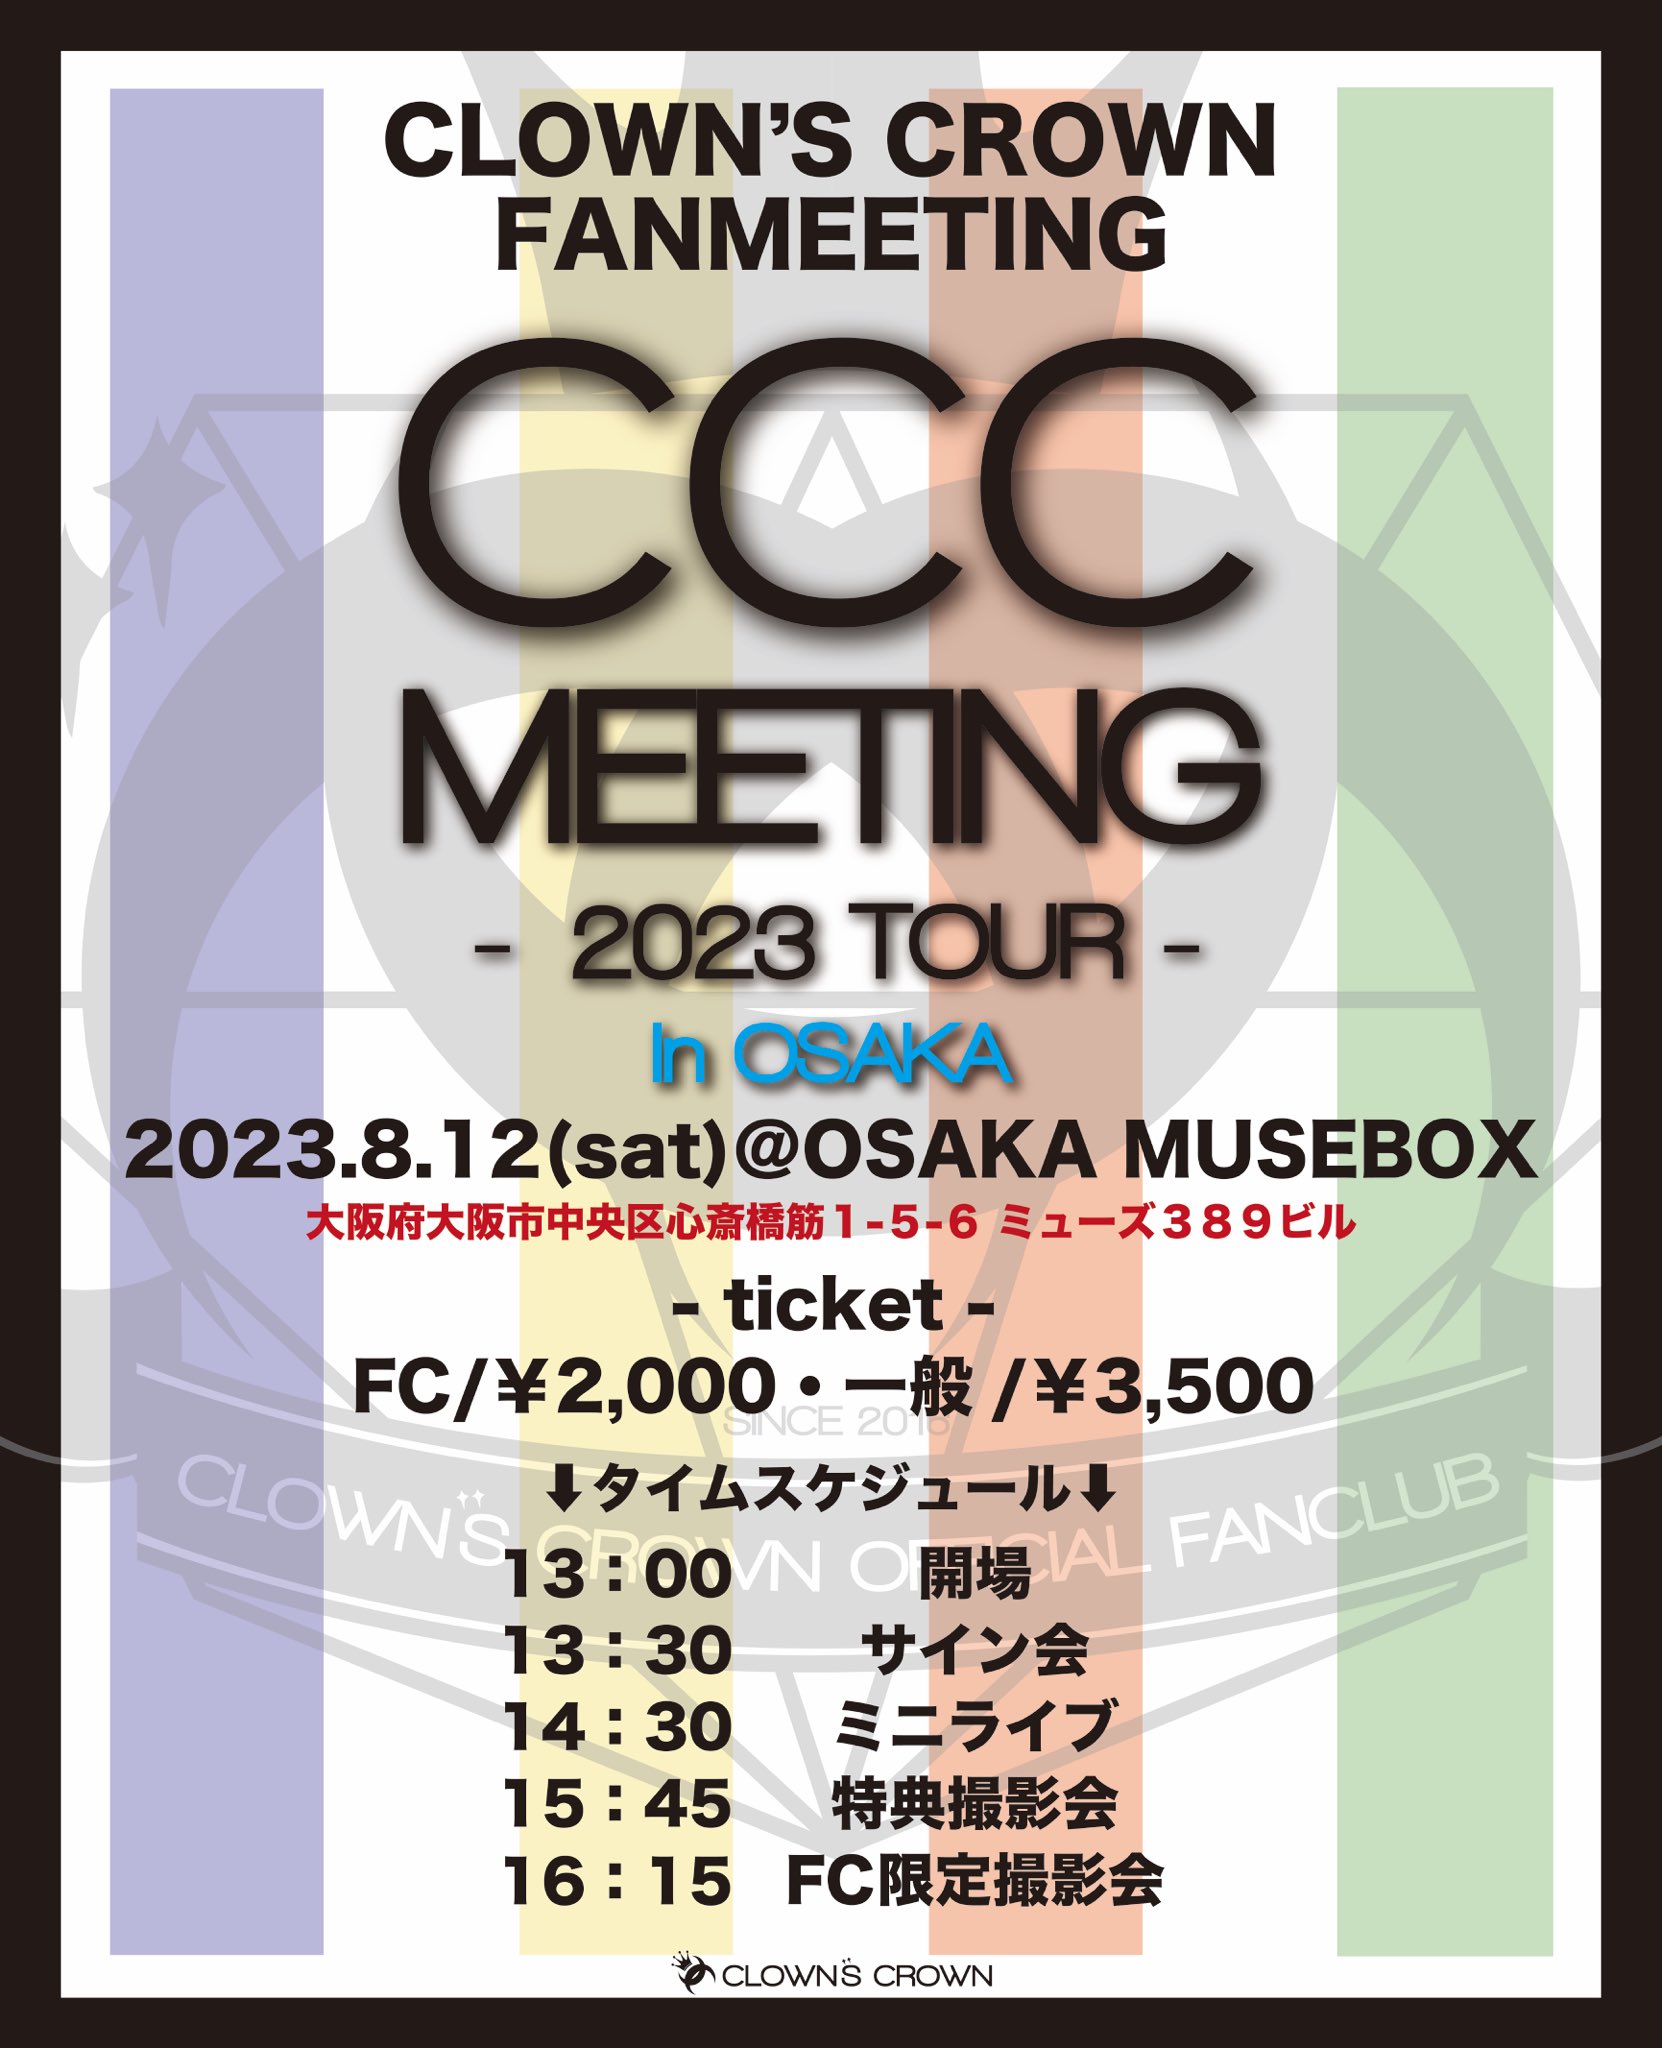 CCCmeeting TOUR 大阪公演